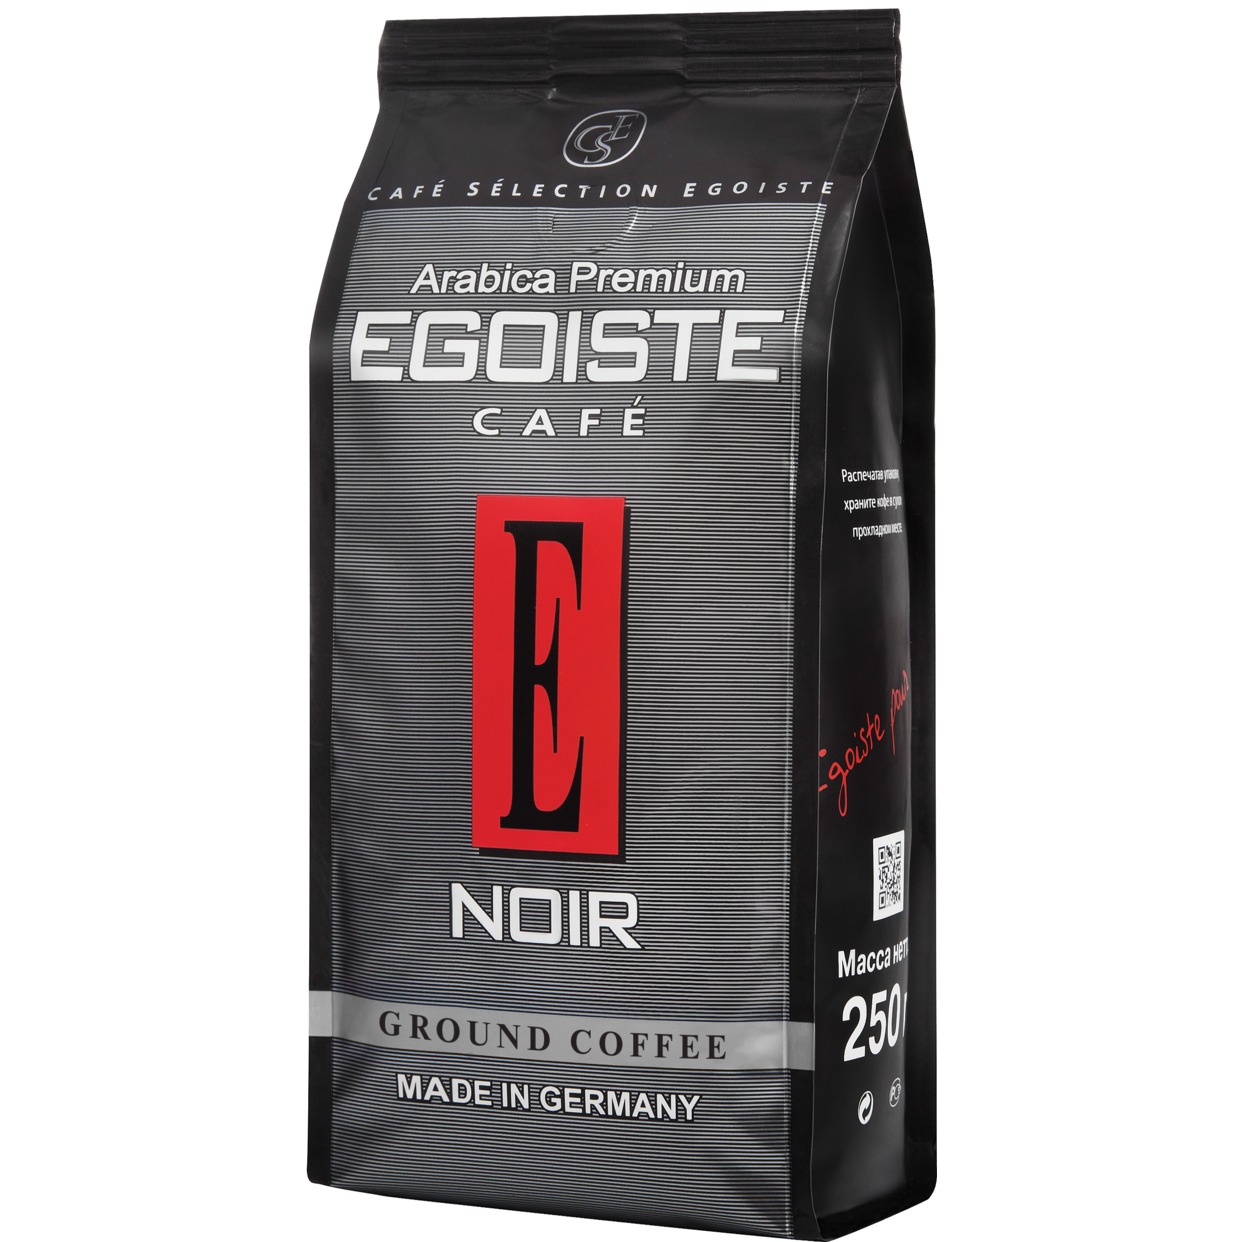 Кофе Egoiste Noir, молотый, 250 г по акции в Пятерочке